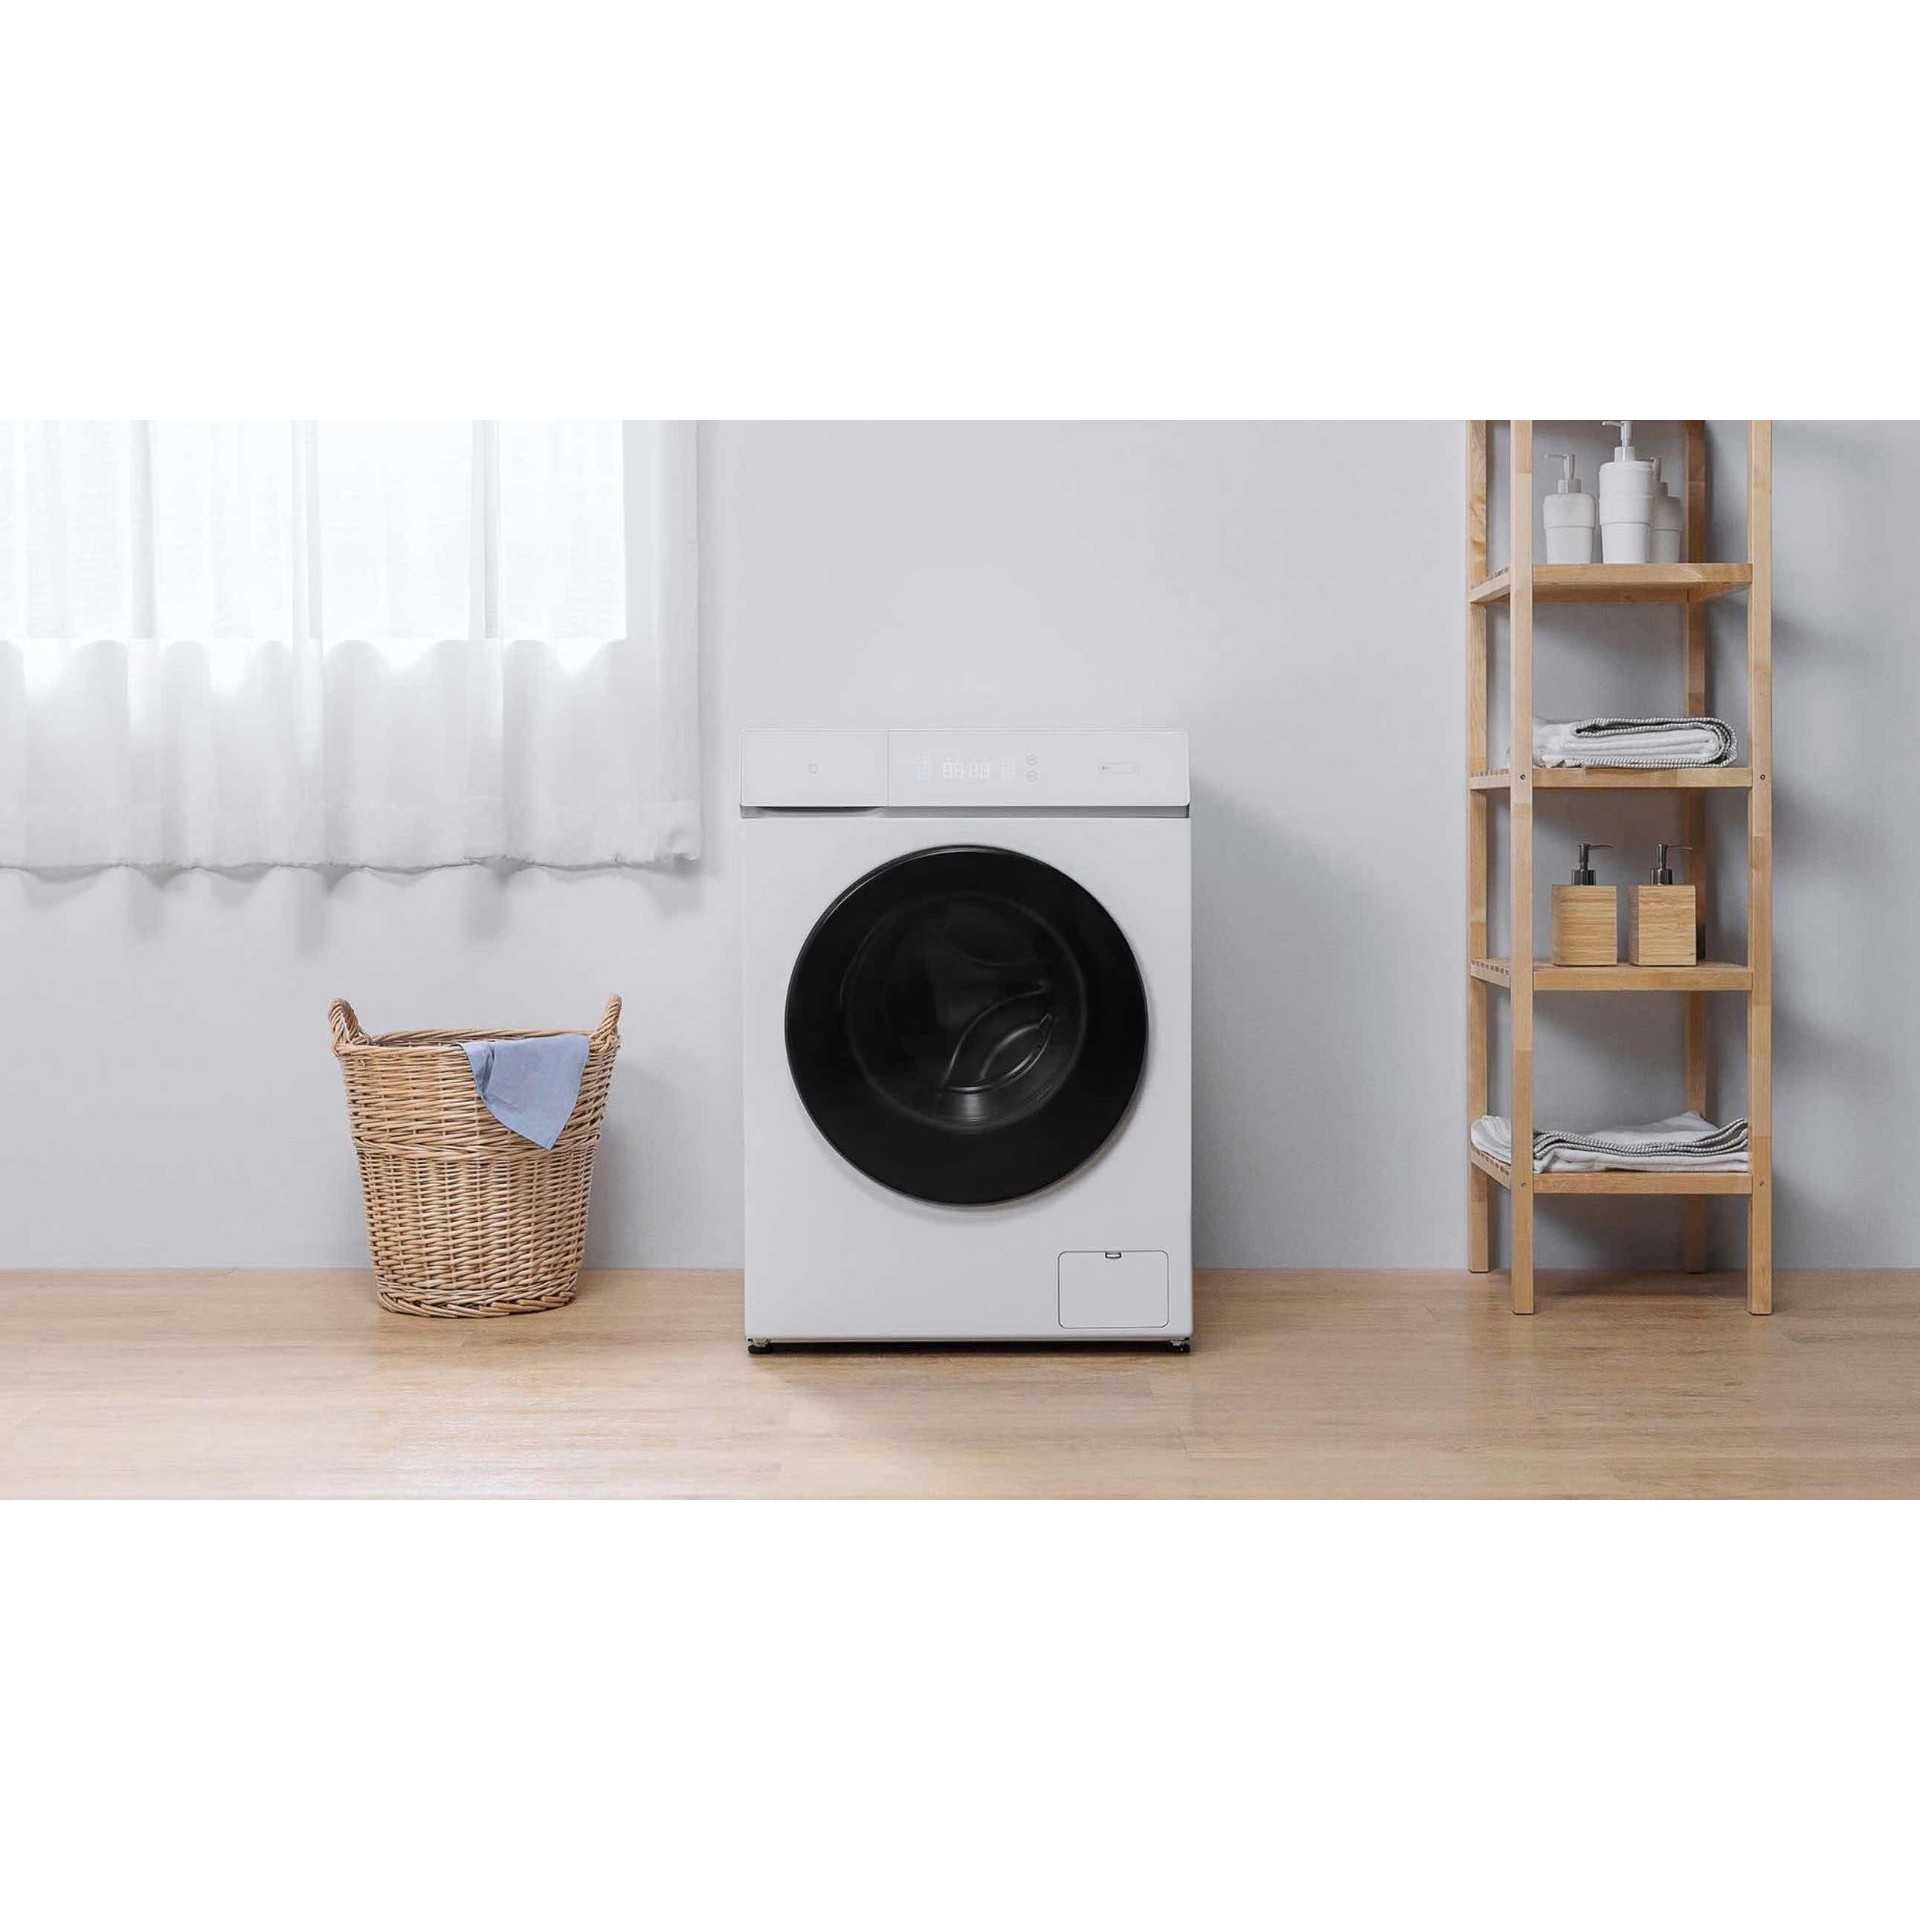 Обзор xiaomi mijia washing machine и washing drying mashine pro умные стиральные машины с сушкой